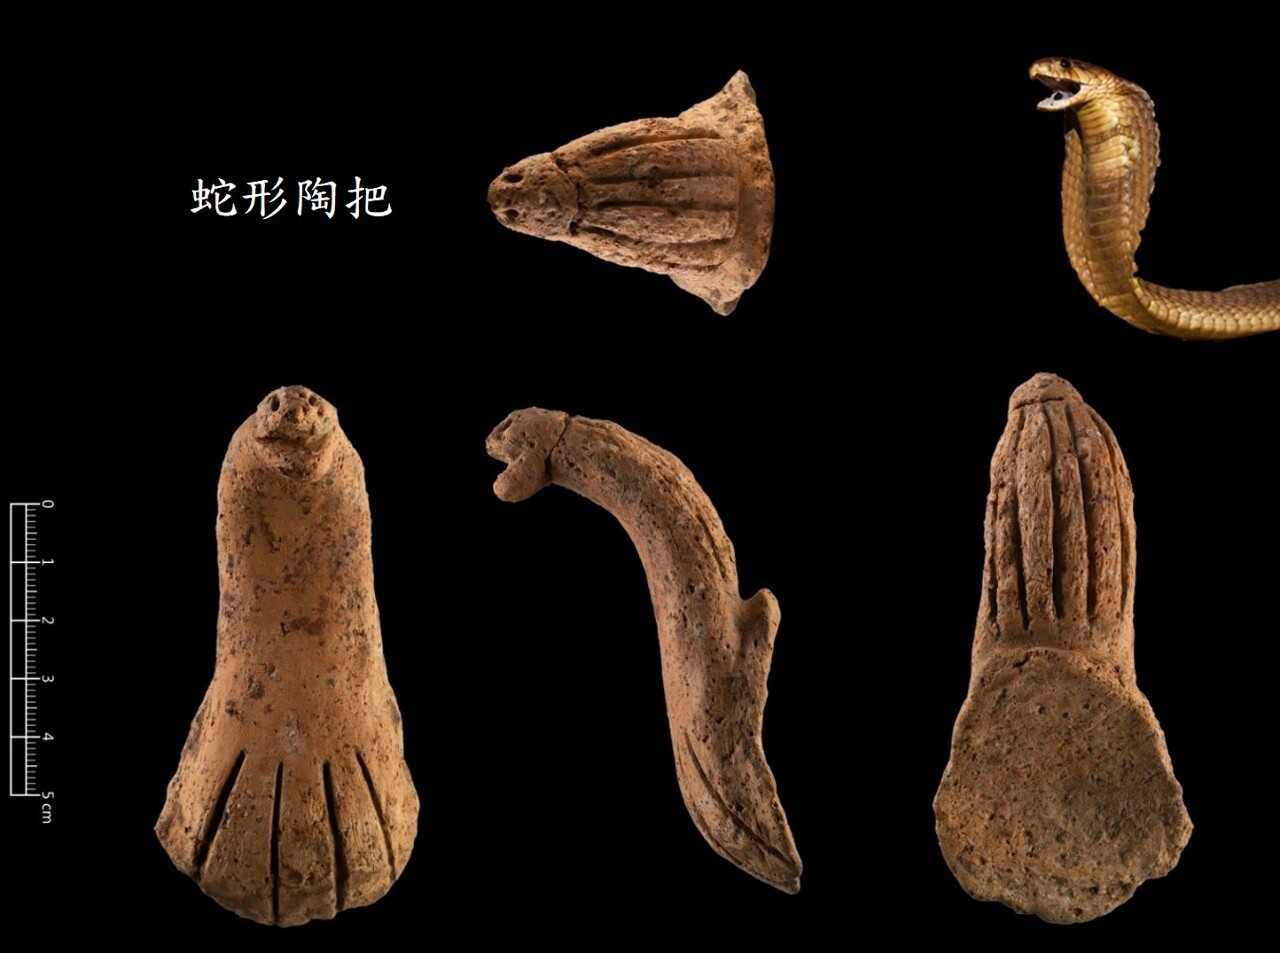 清大考古發現蛇形陶把  推估距今4千年前